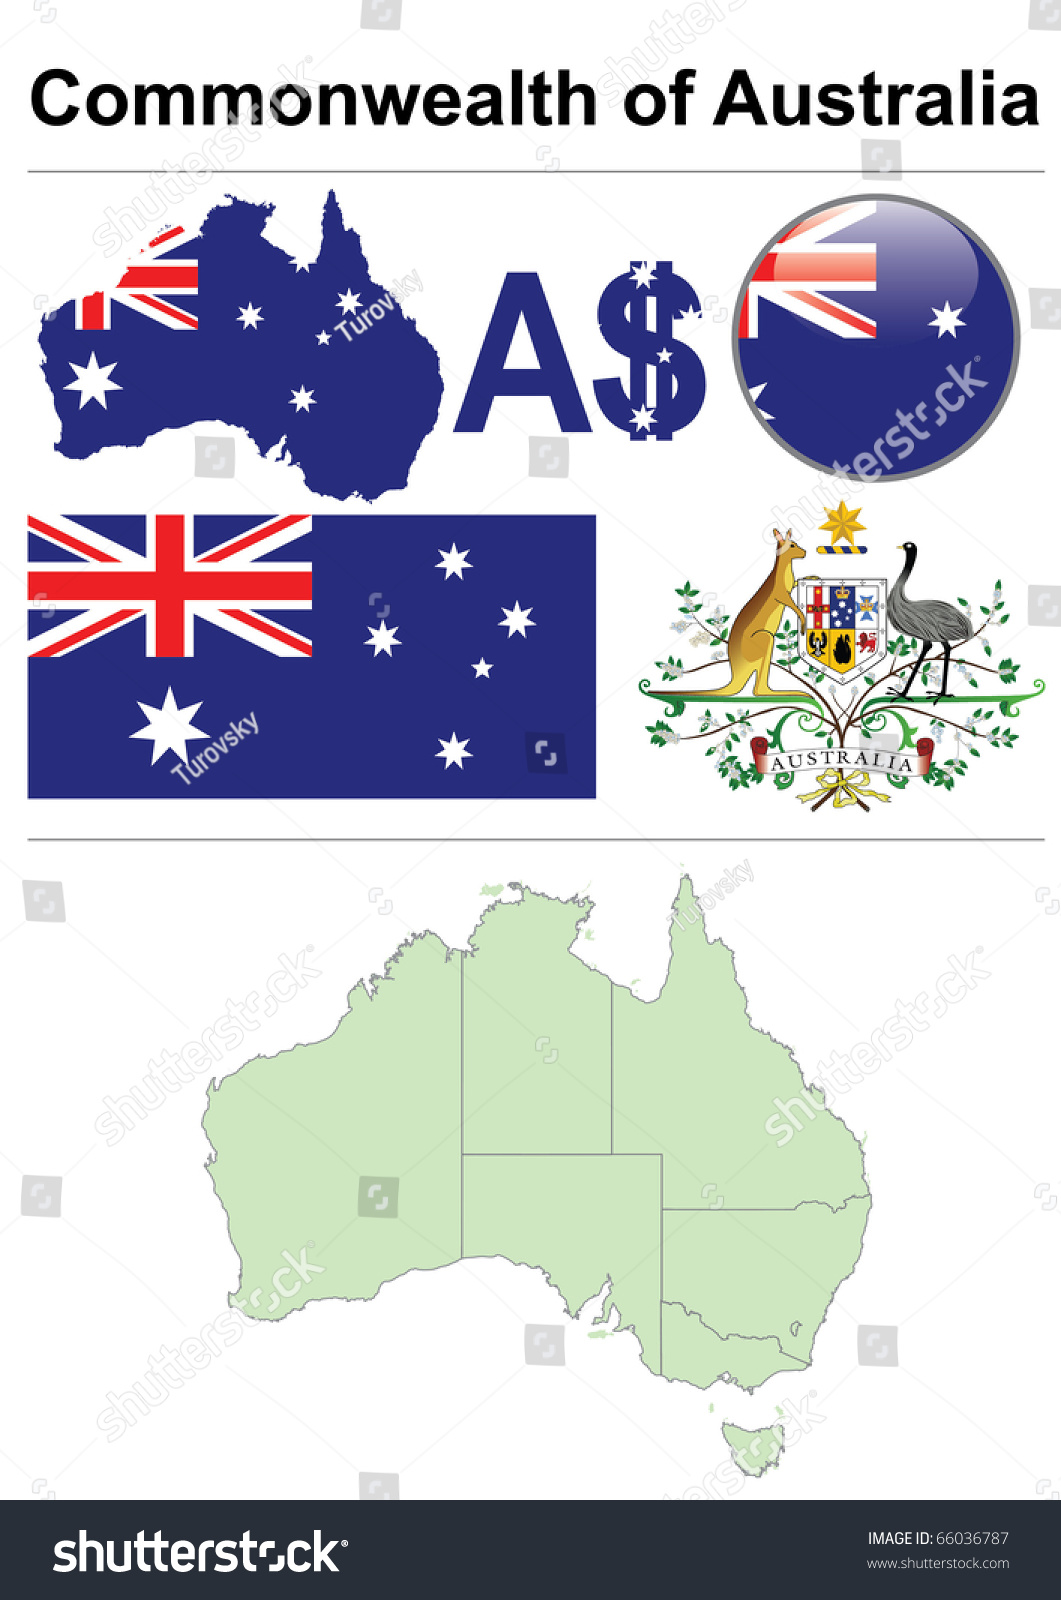 澳大利亚集合包括国旗、地图(行政区划)、符号